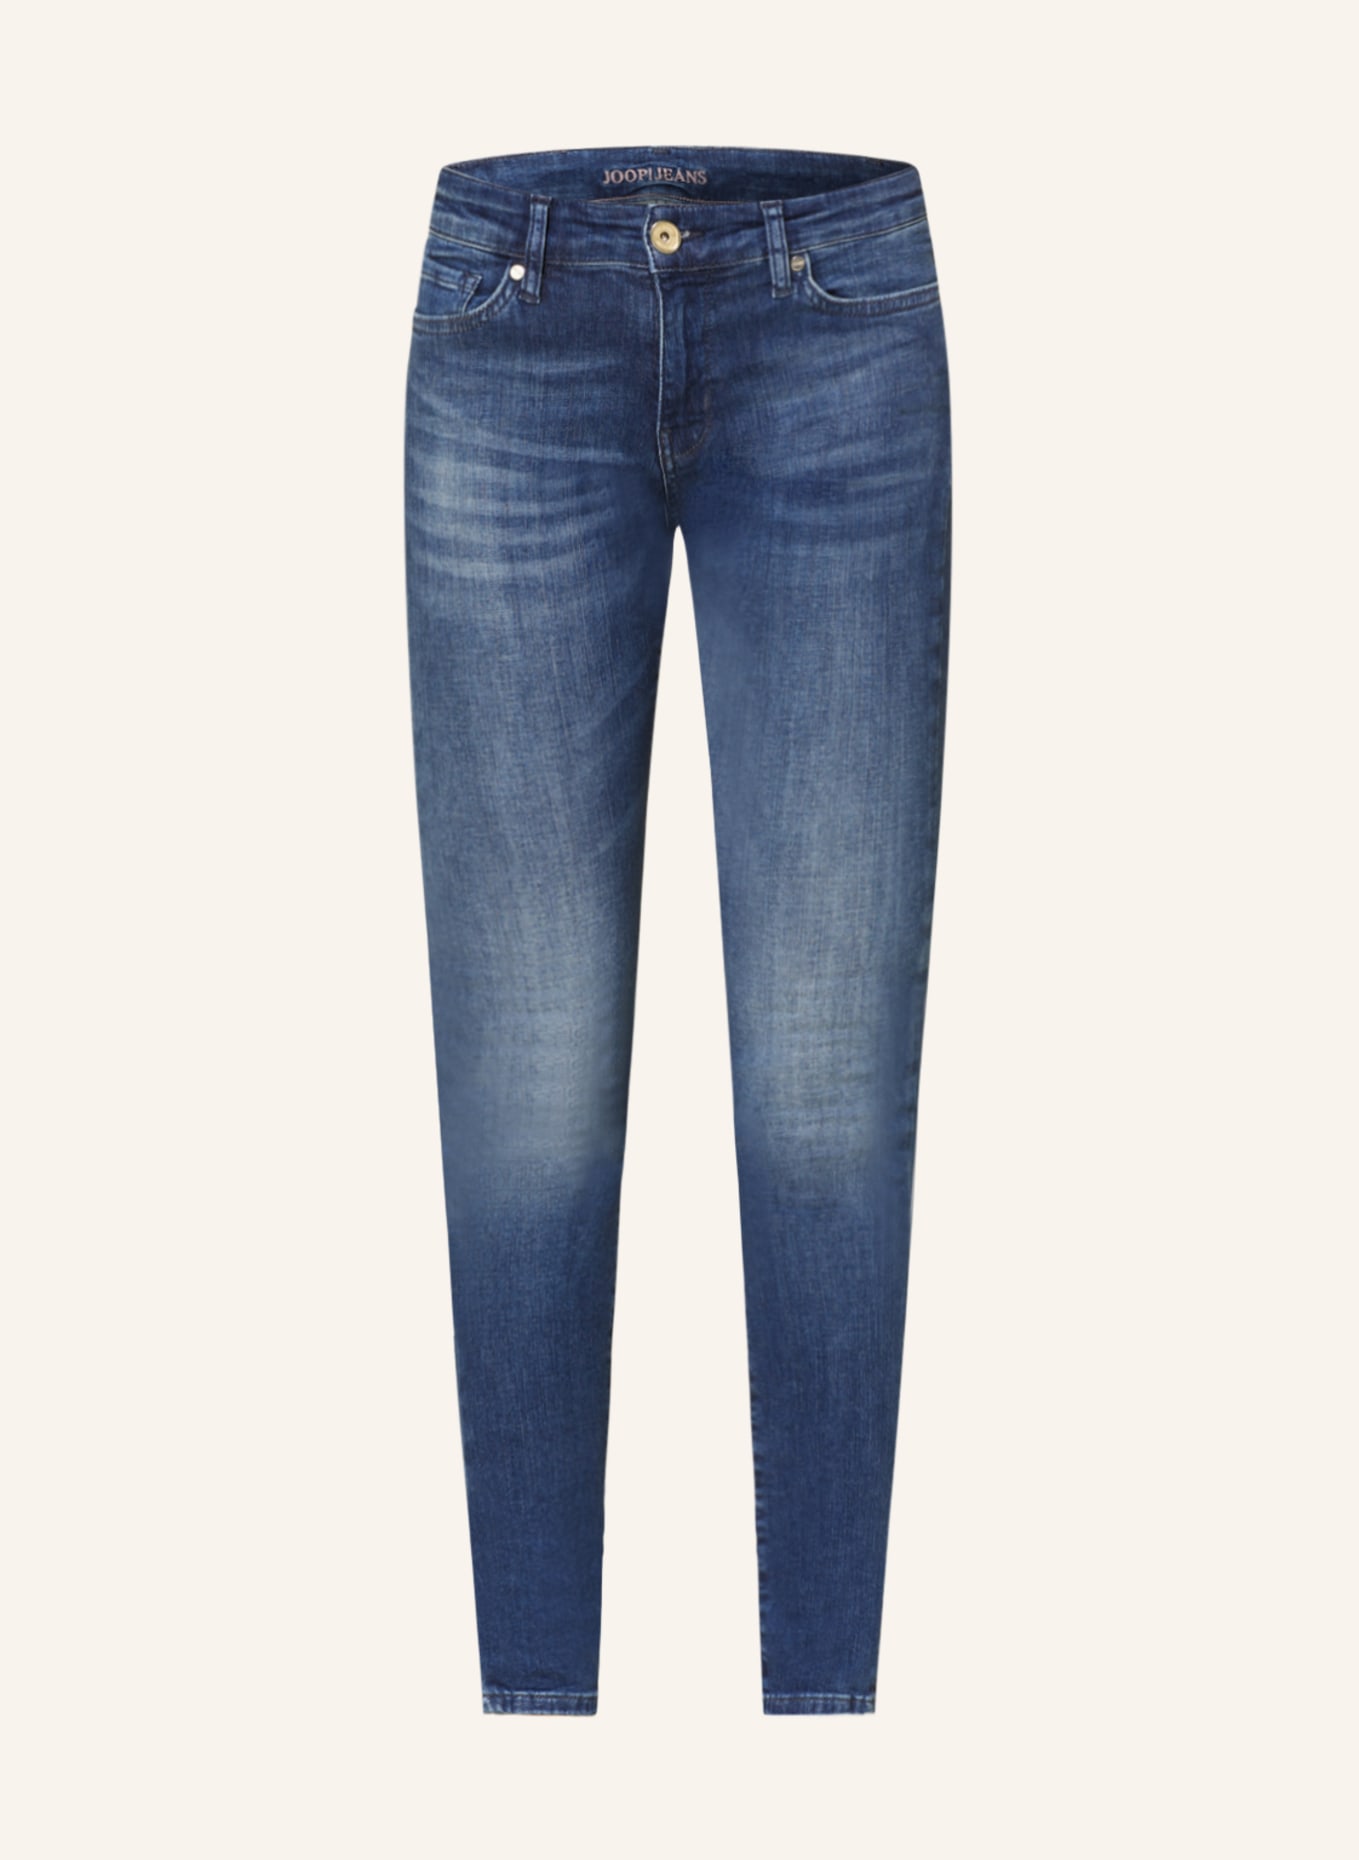 JOOP! Skinny jeans, Color: 425 Medium Blue                425 (Image 1)